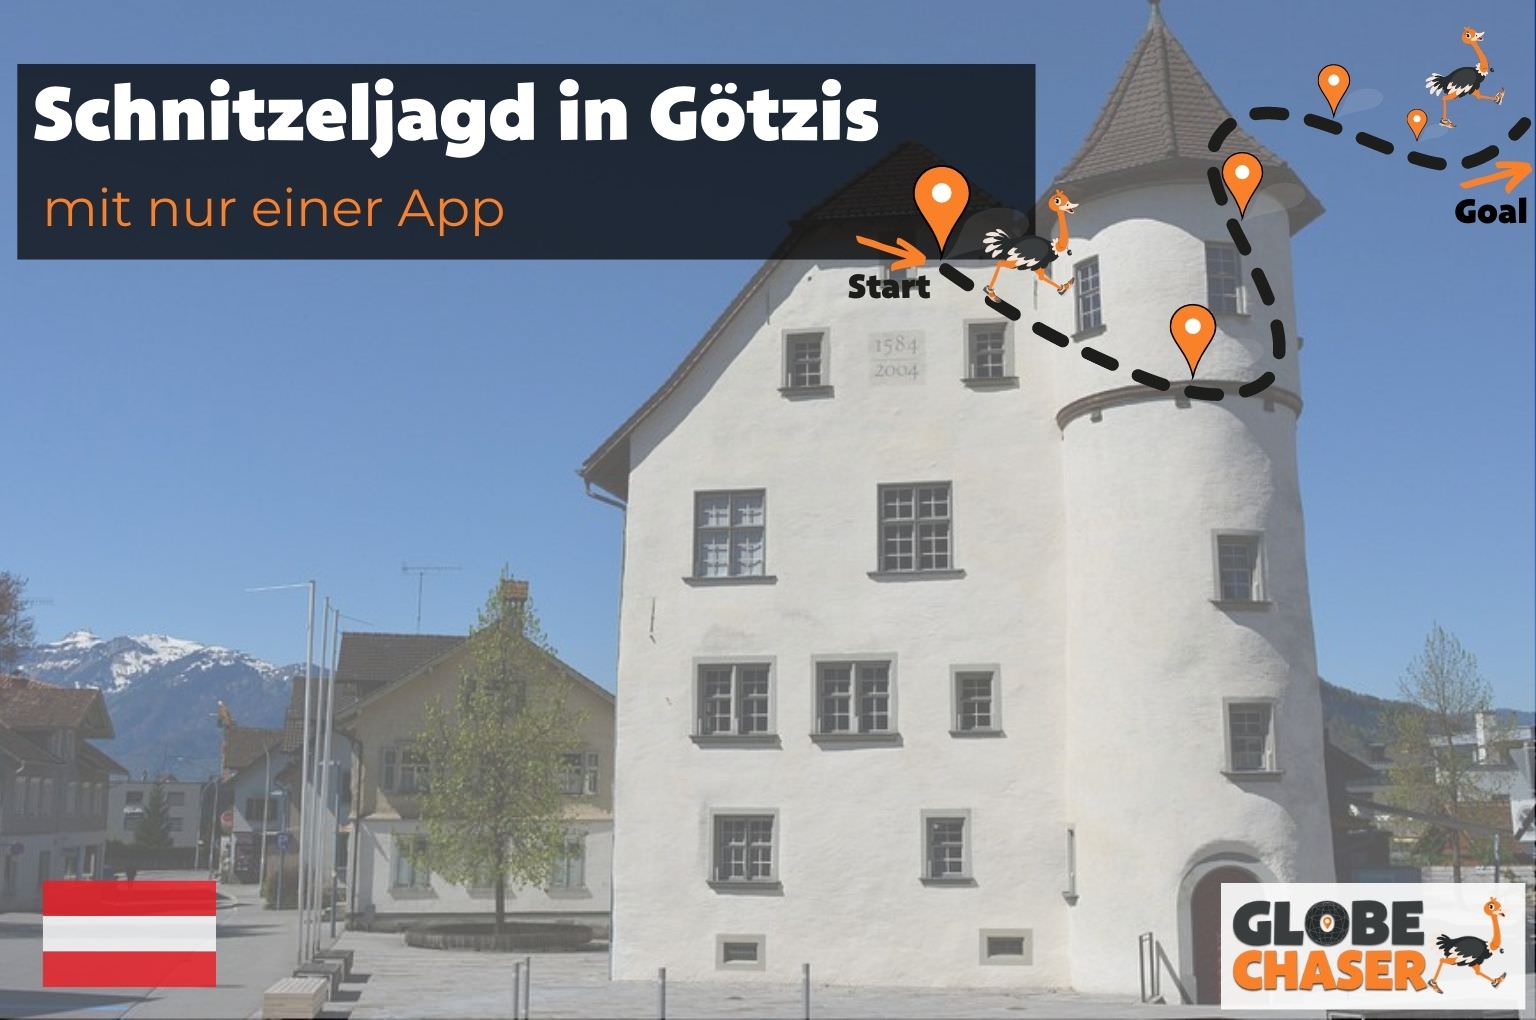 Schnitzeljagd in Goetzis mit App - Globe Chaser Erlebnisse Austria